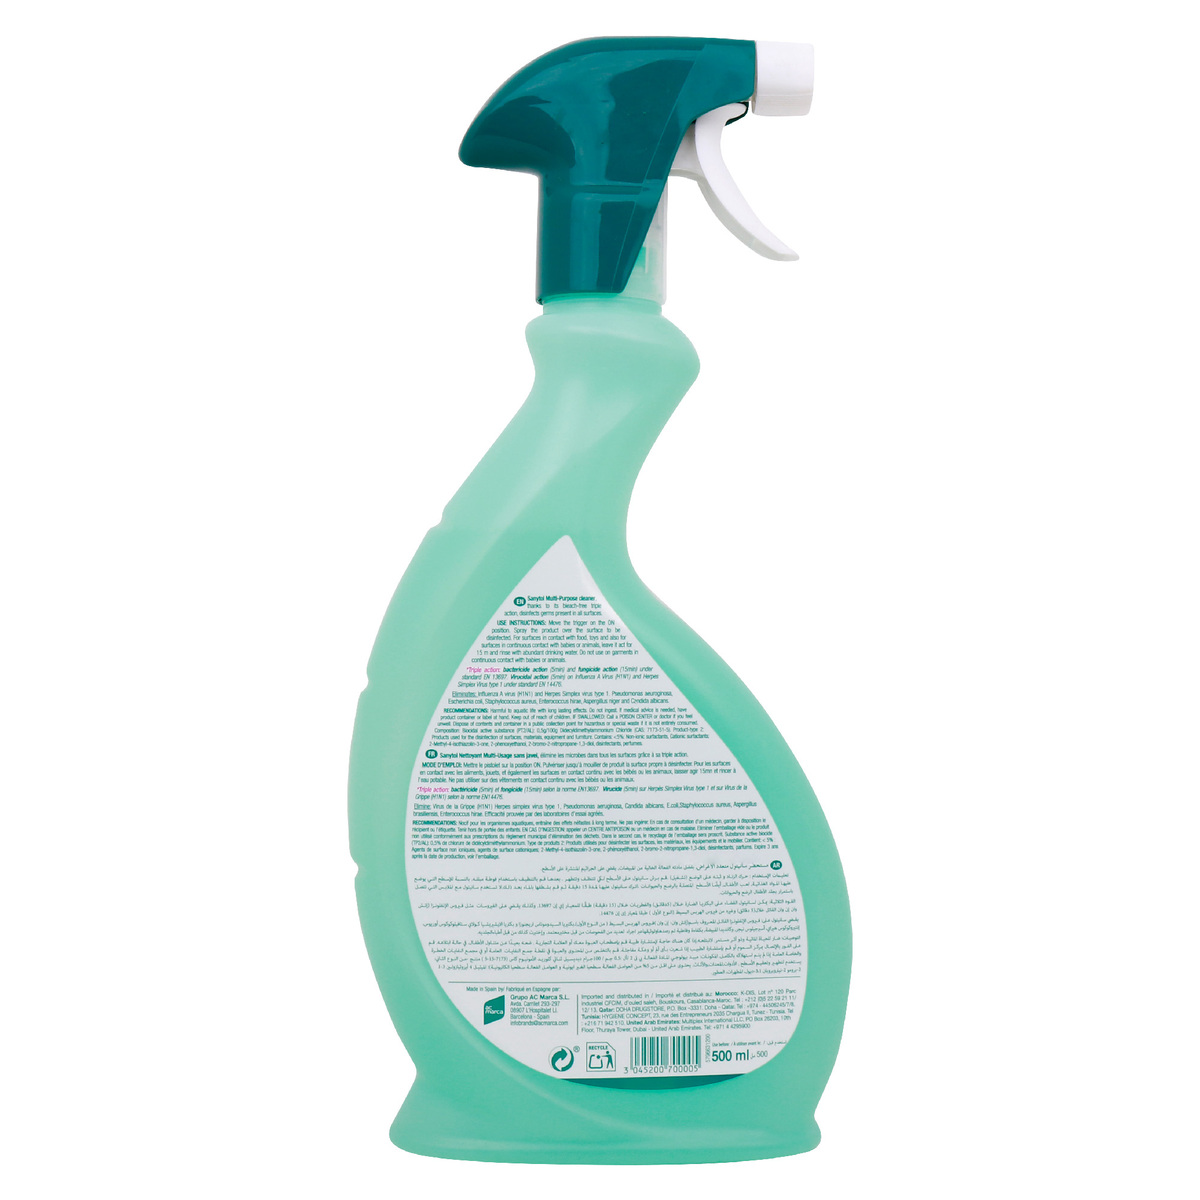 Sanytol Multipurpose Cleaner 500 ml